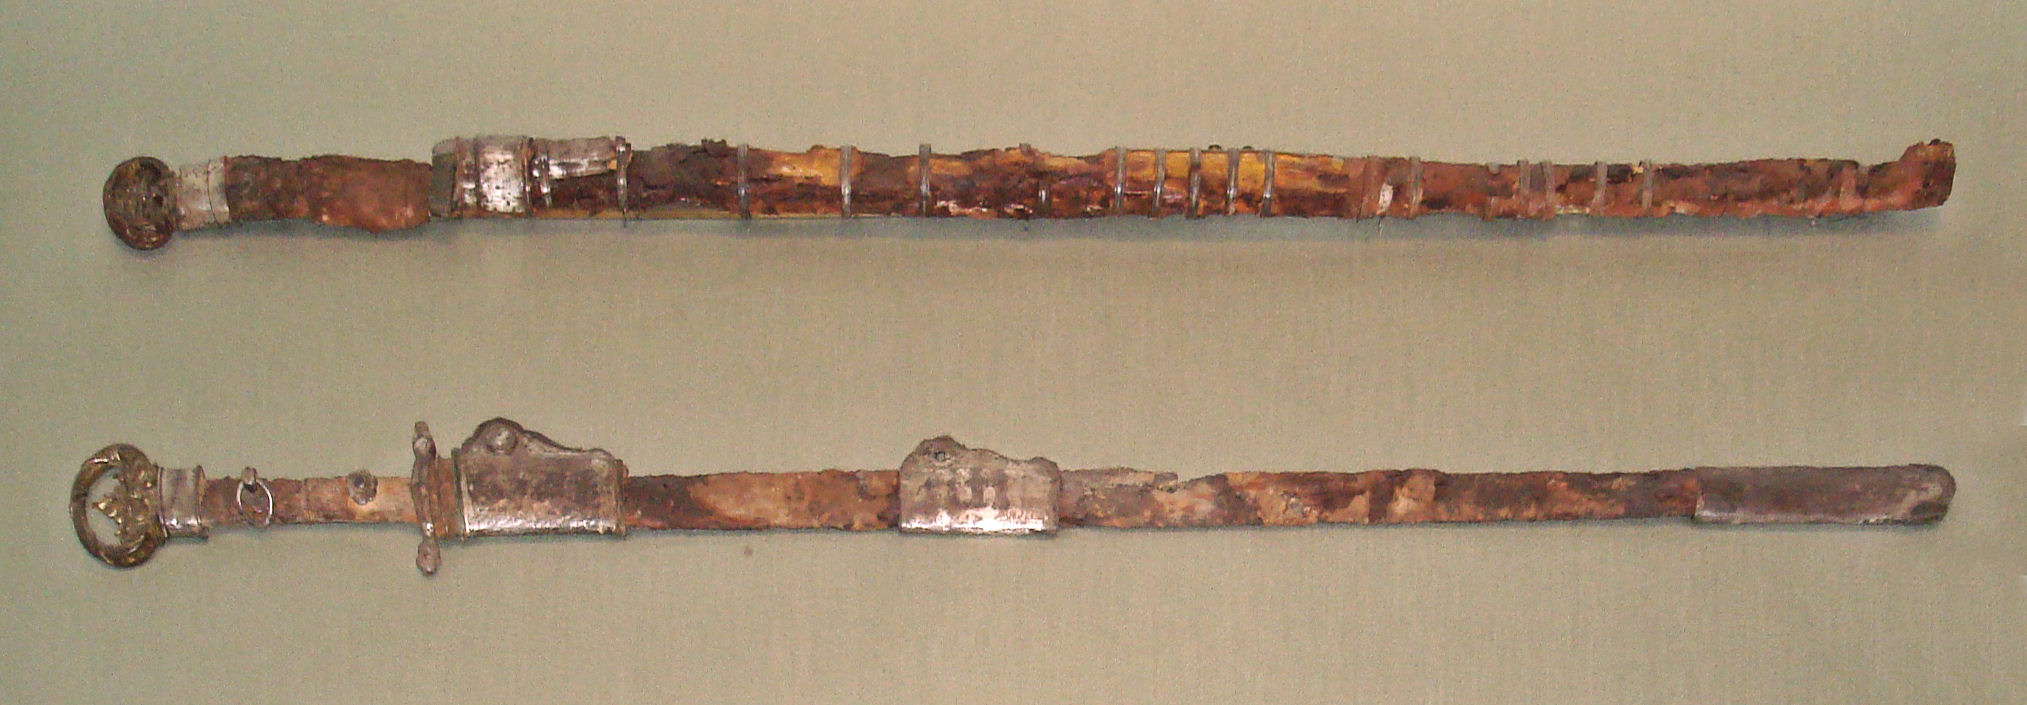 Китайские мечи периода династии Суй (около 600 года нашей эры)